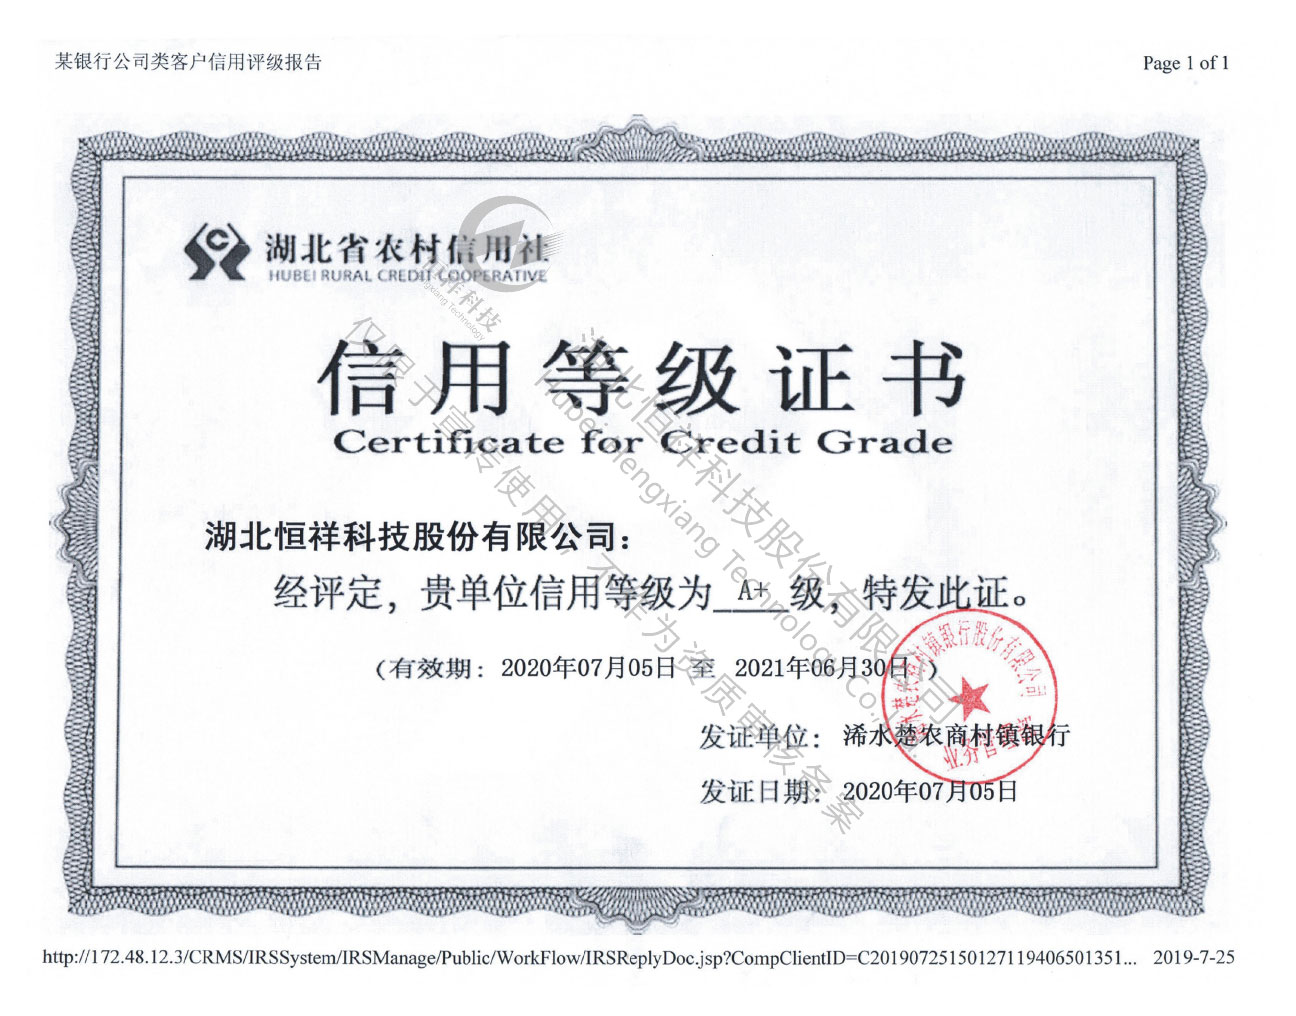 Bank credit rating certificate